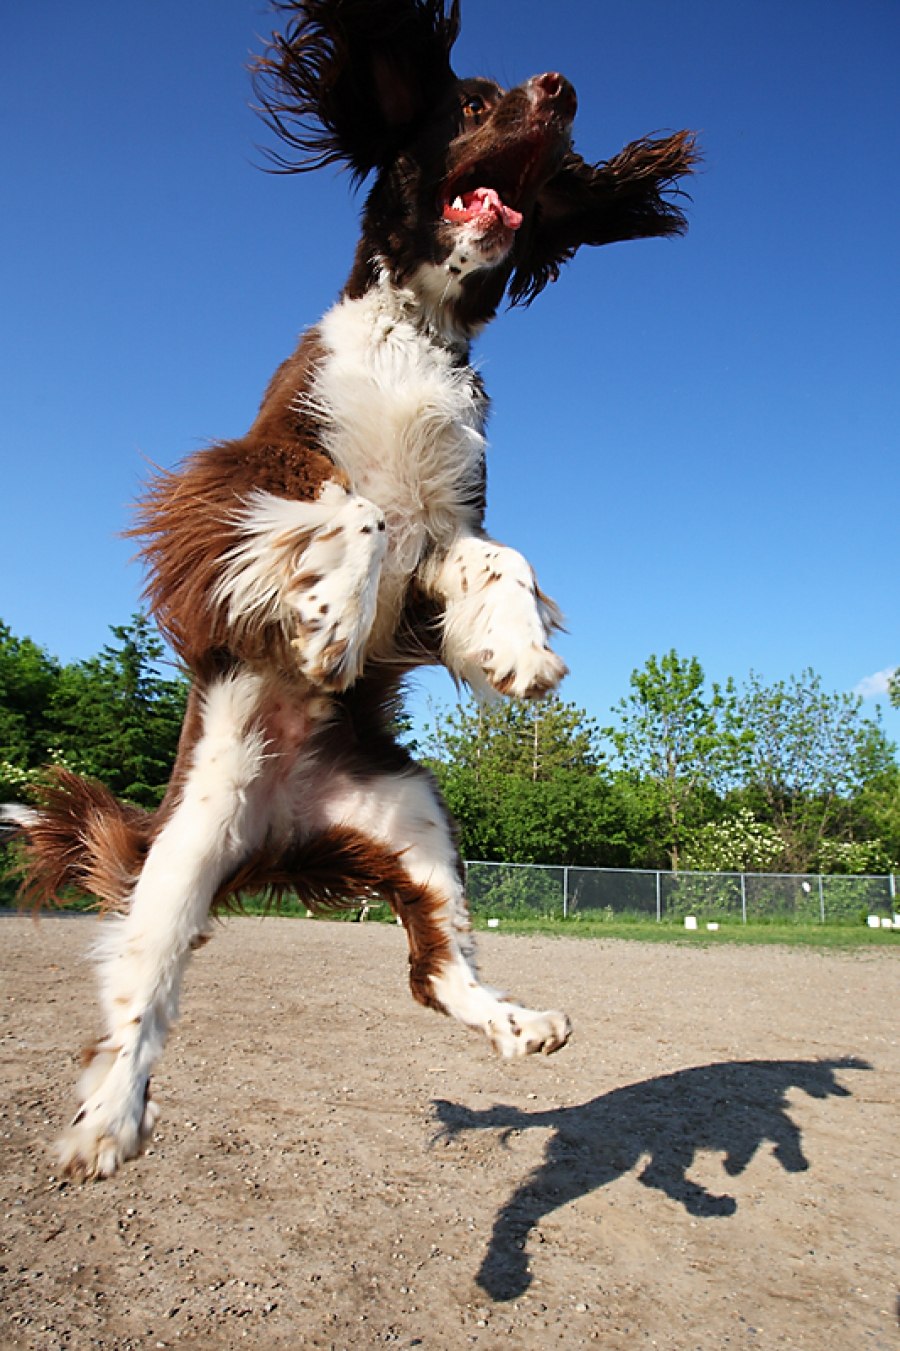 My dog can jump. Собака прыгает. Собака в прыжке. Собака подпрыгивает. Спаниель в прыжке.